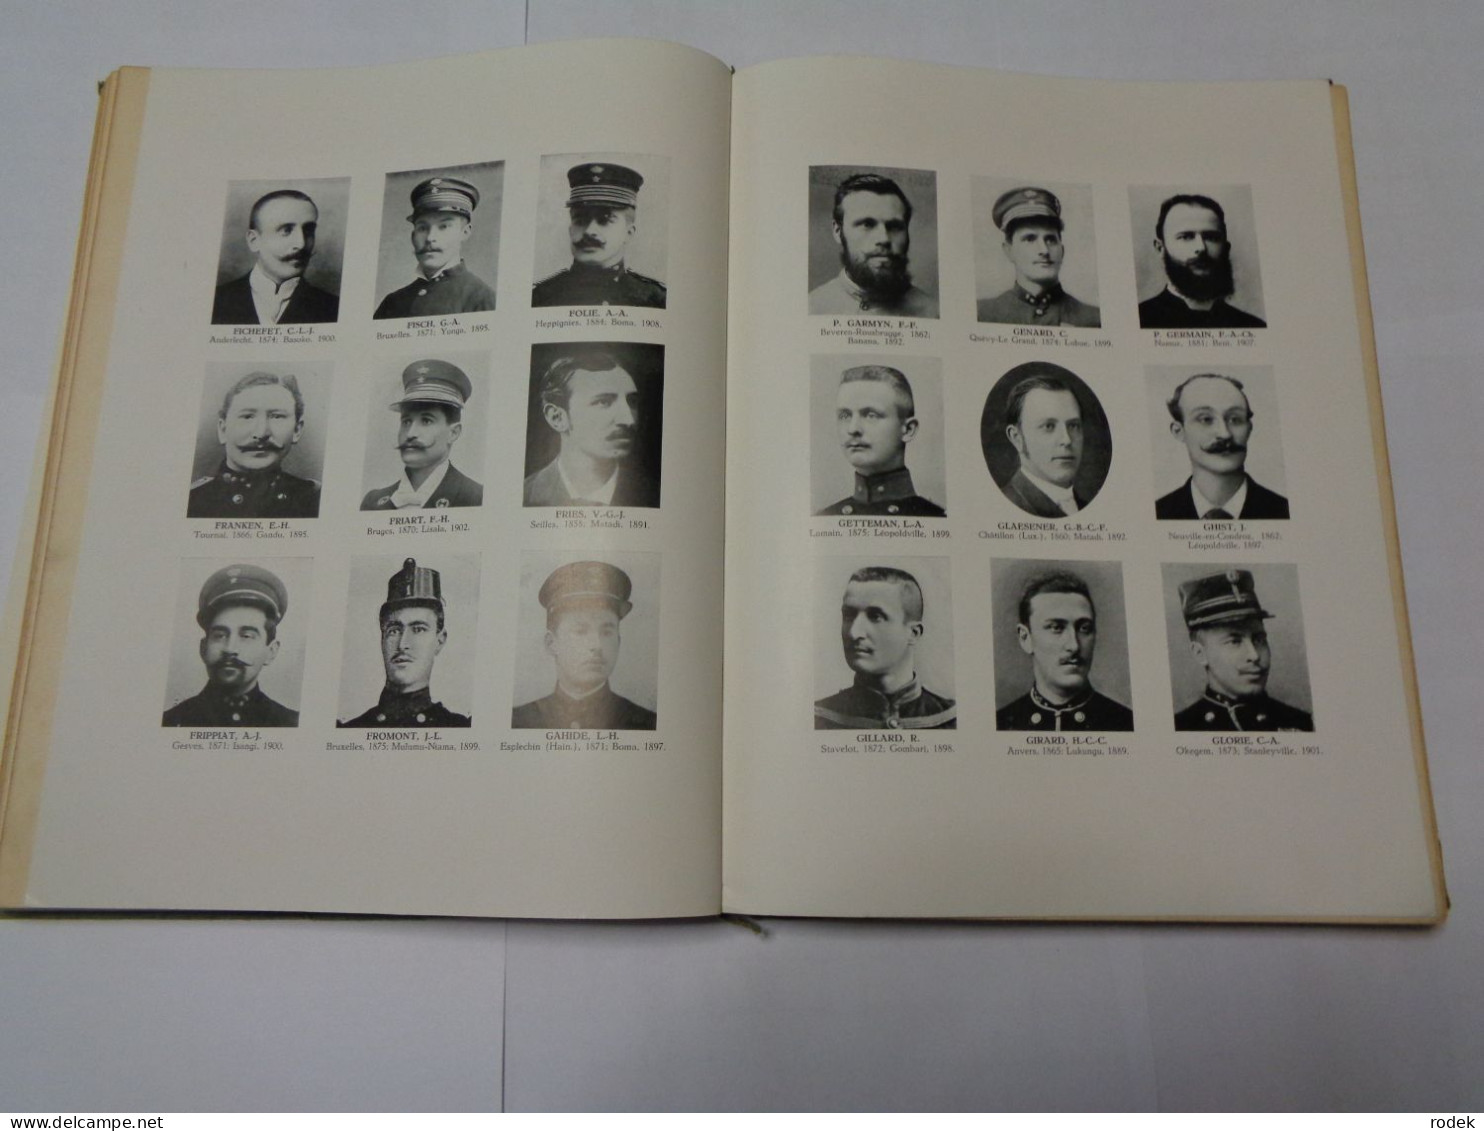 Livre D'or : A nos Héros coloniaux morts pour la Civilisation ( 1870 - 1908 ) Ligue du Souvenir Congolais